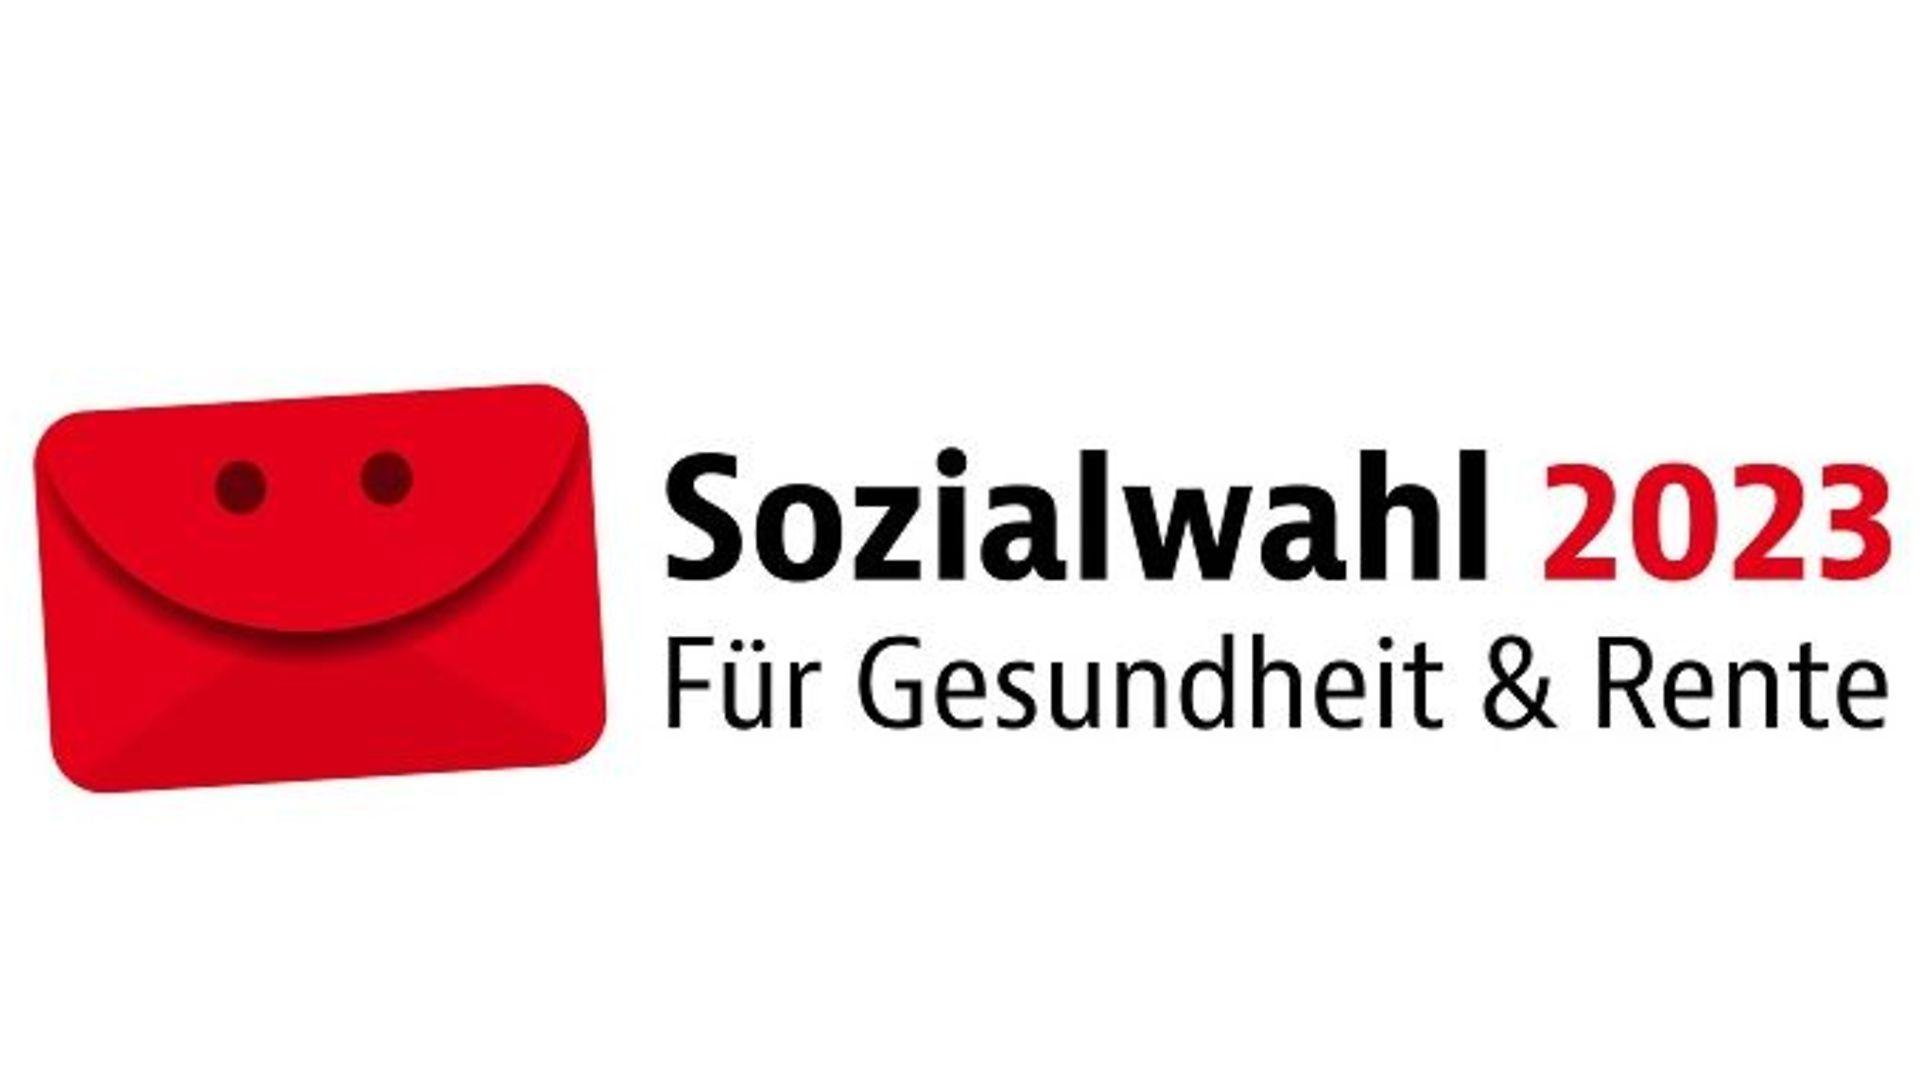 Logo der Sozialwahl 2023: Illustration eines roten Briefumschlags mit Augen und Mund sowie dem Text "Für Gesundheit und Rente."